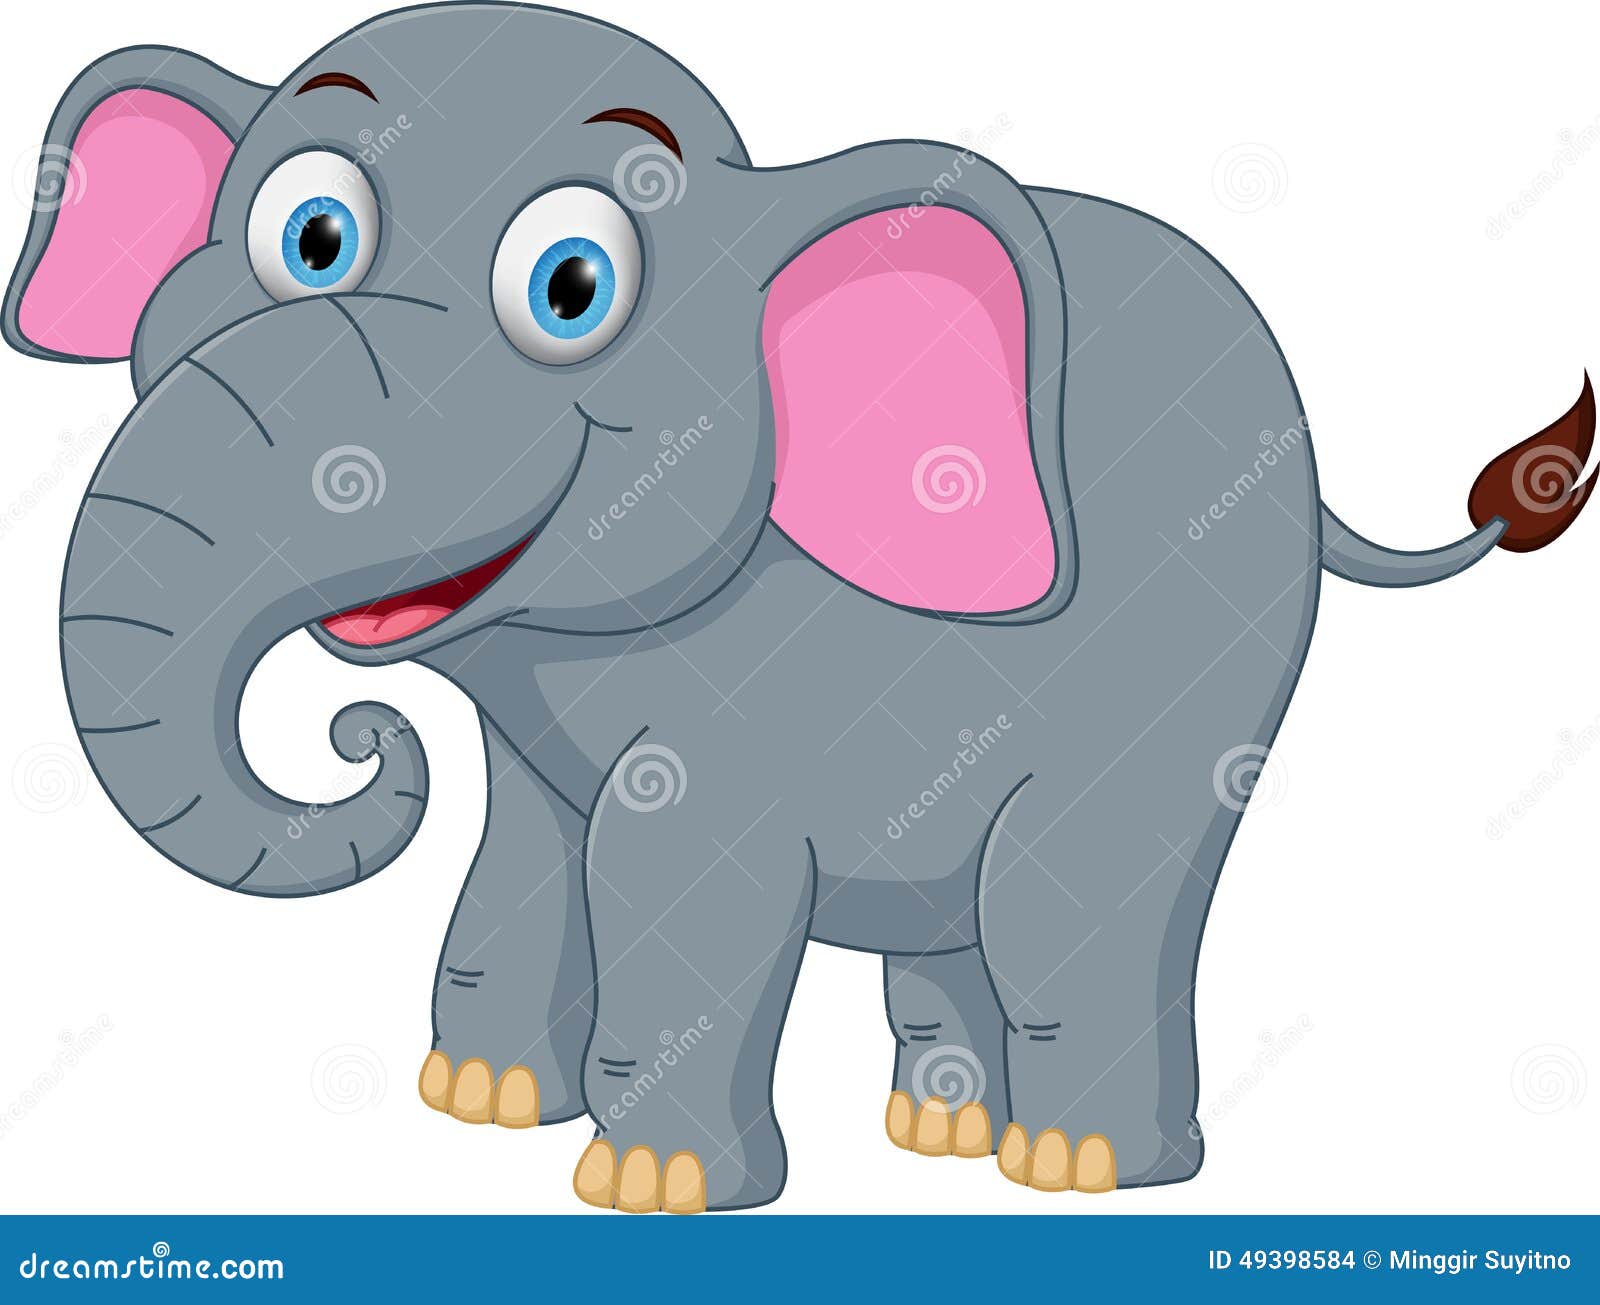 happy elephant clipart - photo #31